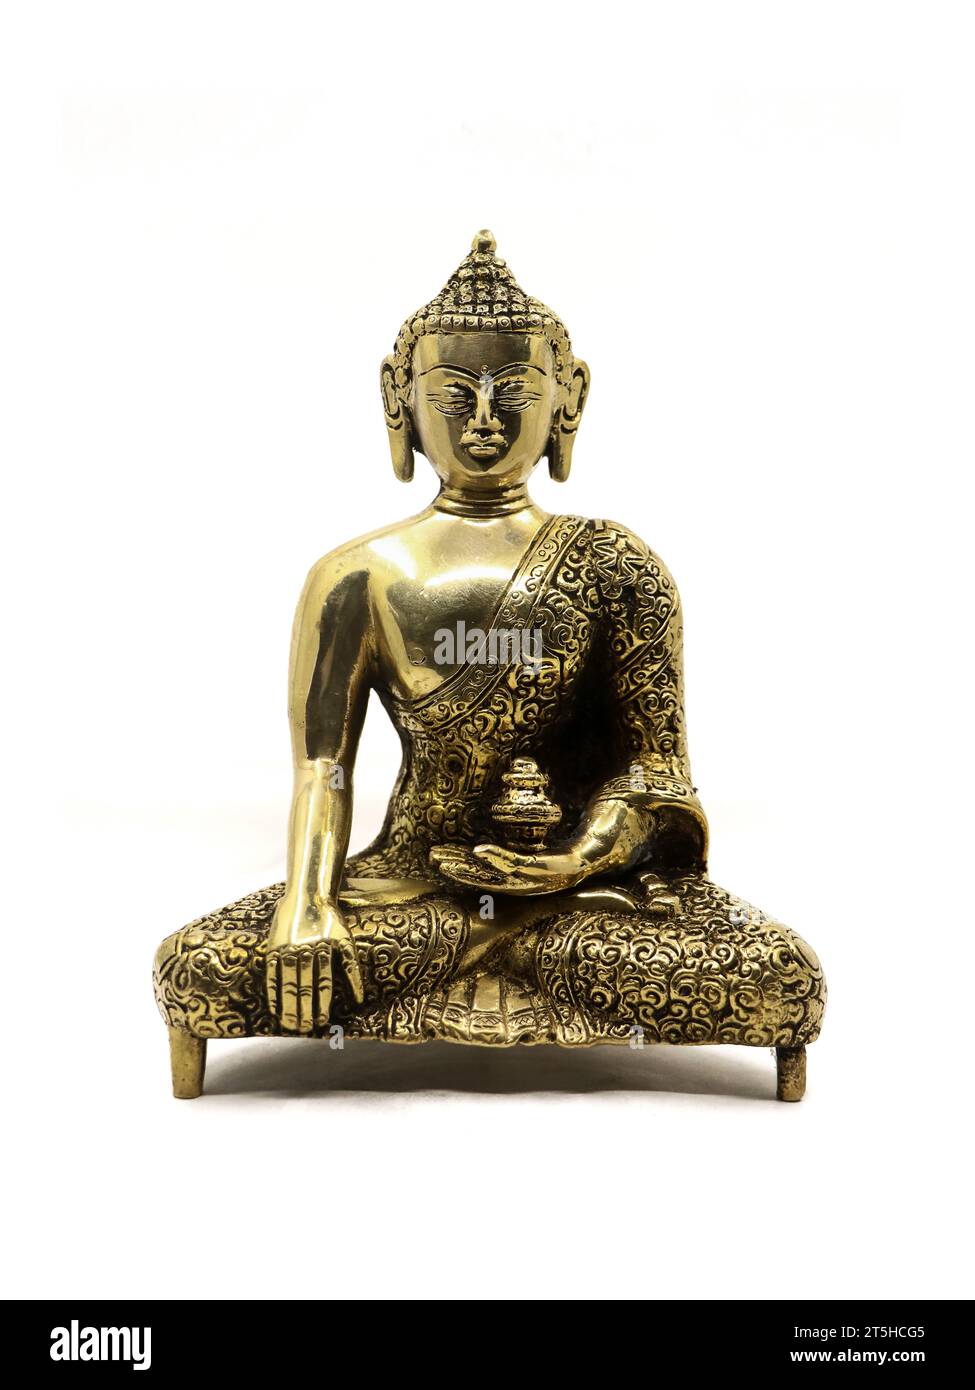 statue dorée complexe de bouddha méditant dans la paix fabriqué à la main avec de beaux et exquis détails, à partir d'une collection d'objets antiques de luxe, i Banque D'Images